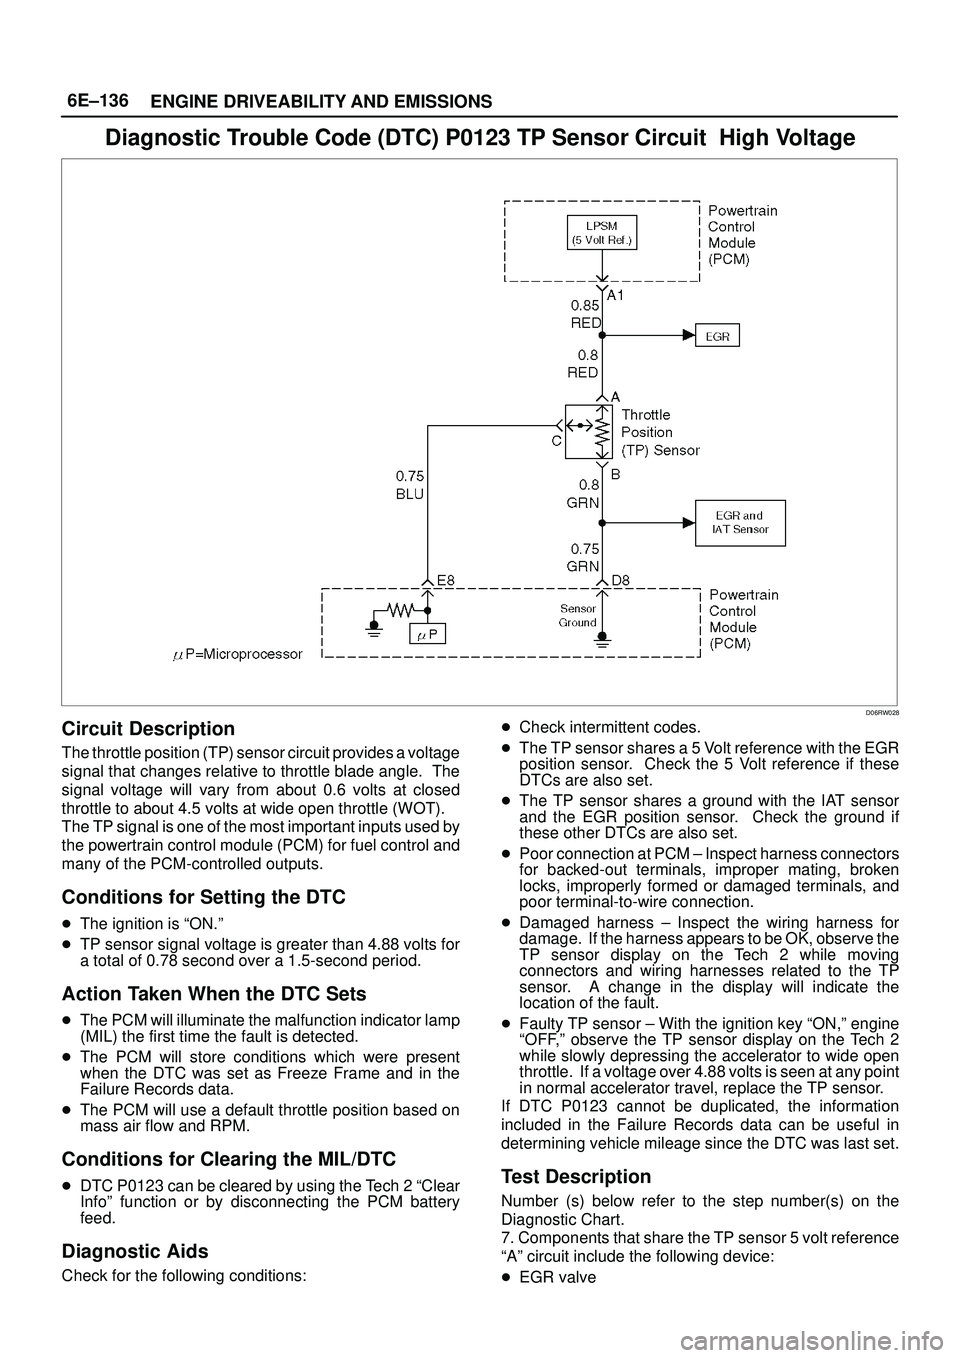 ISUZU TROOPER 1998  Service Owners Manual 6E±136
ENGINE DRIVEABILITY AND EMISSIONS
Diagnostic Trouble Code (DTC) P0123 TP Sensor Circuit  High Voltage
D06RW028
Circuit Description
The throttle position (TP) sensor circuit provides a voltage
